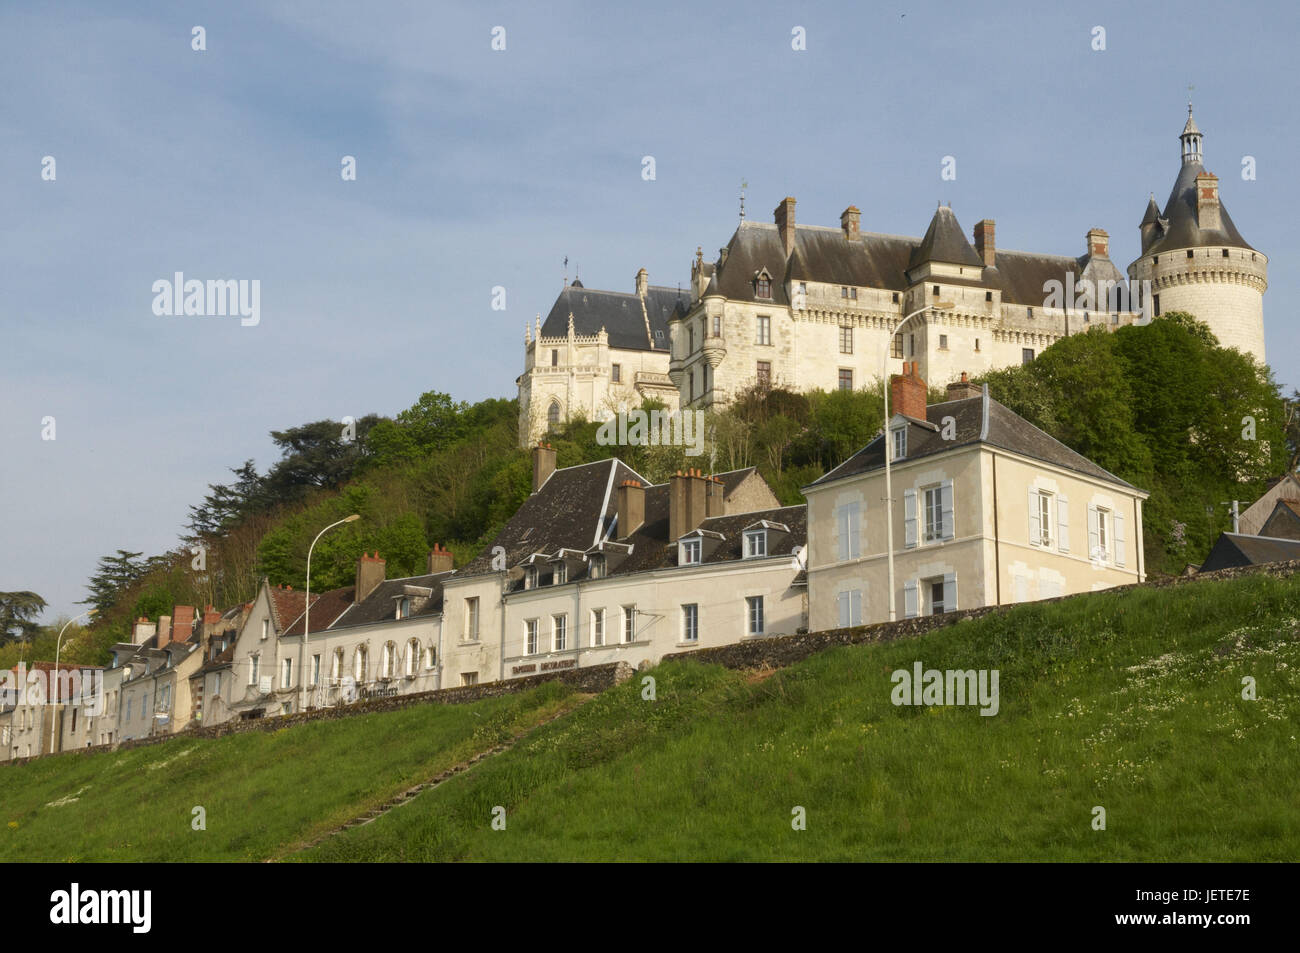 France, Chaumont sur Loire with castle Chaumont, Stock Photo